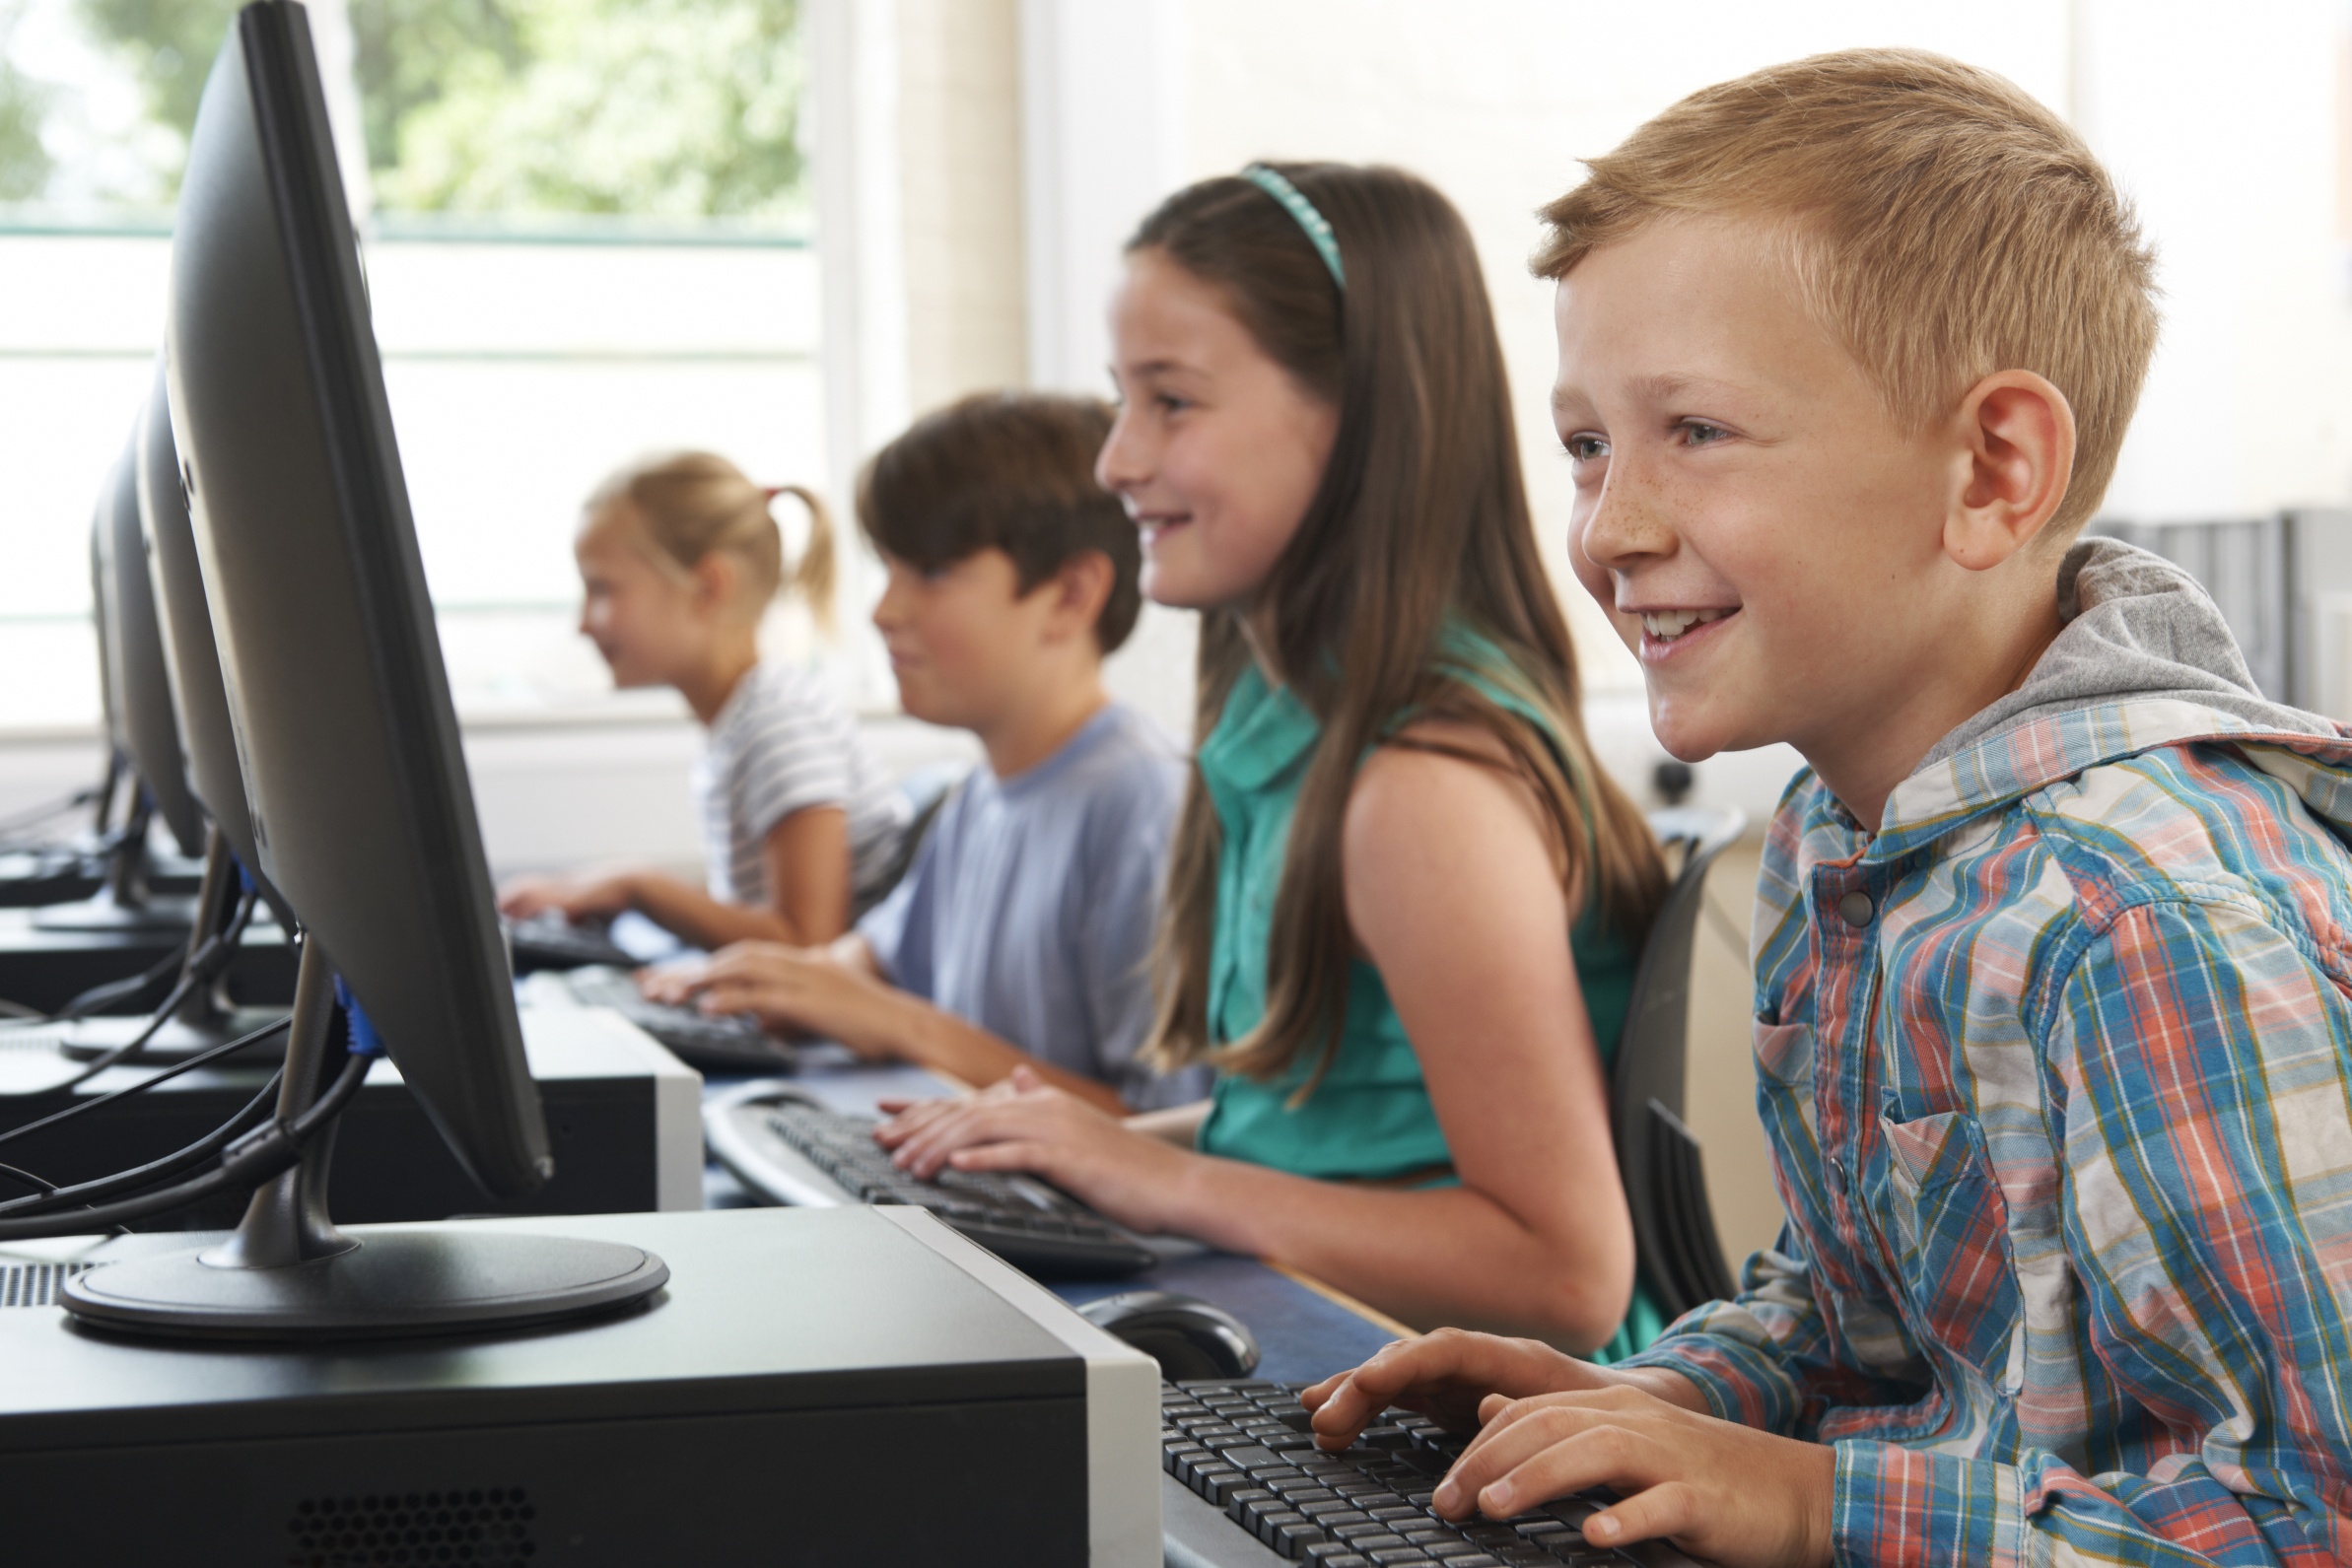 МОН проведет инвентаризацию компьютеров в украинских школах